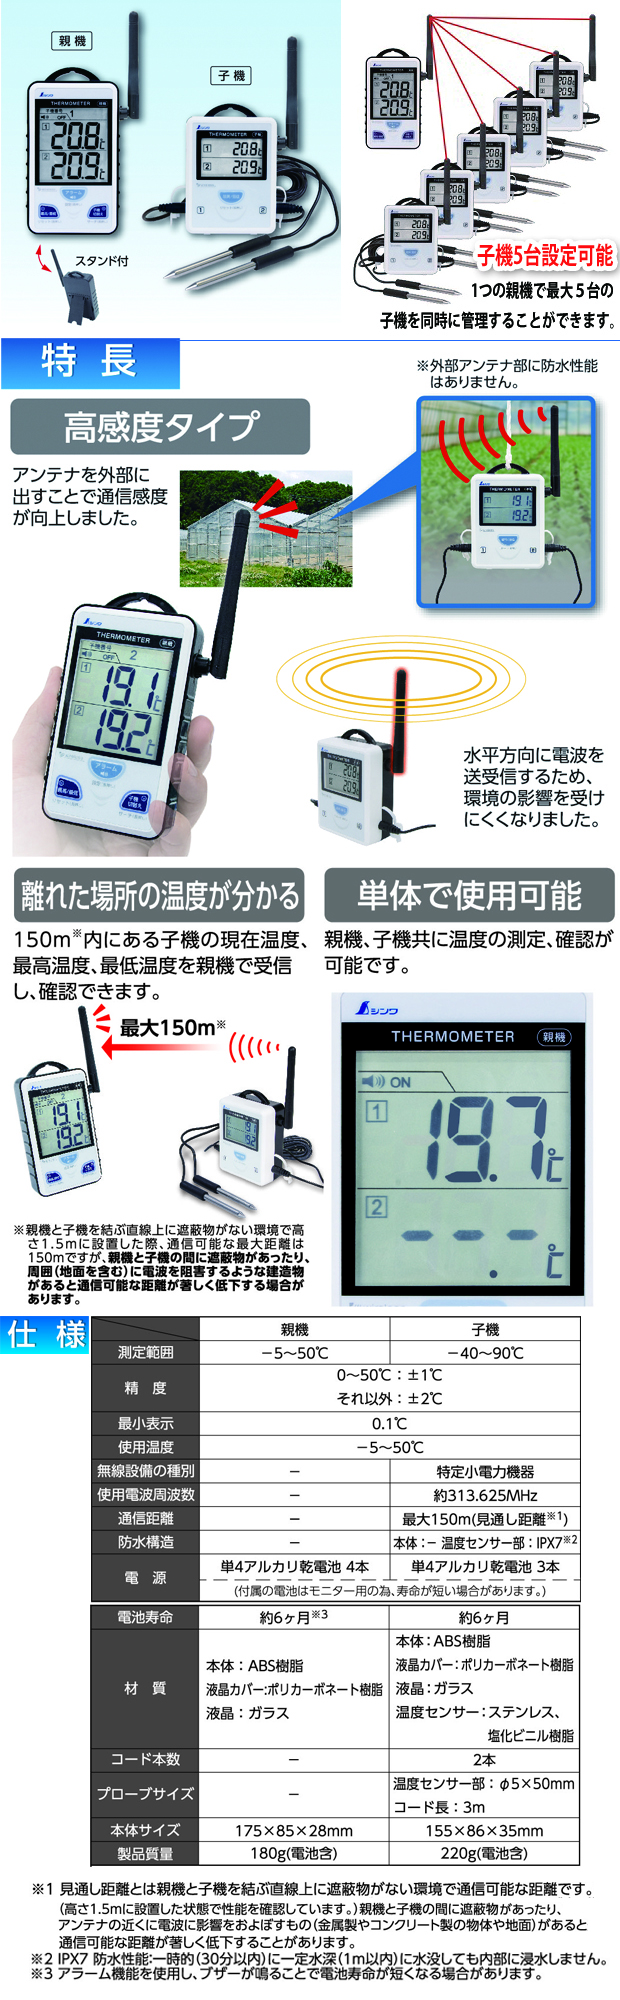 シンワ ワイヤレス温度計A